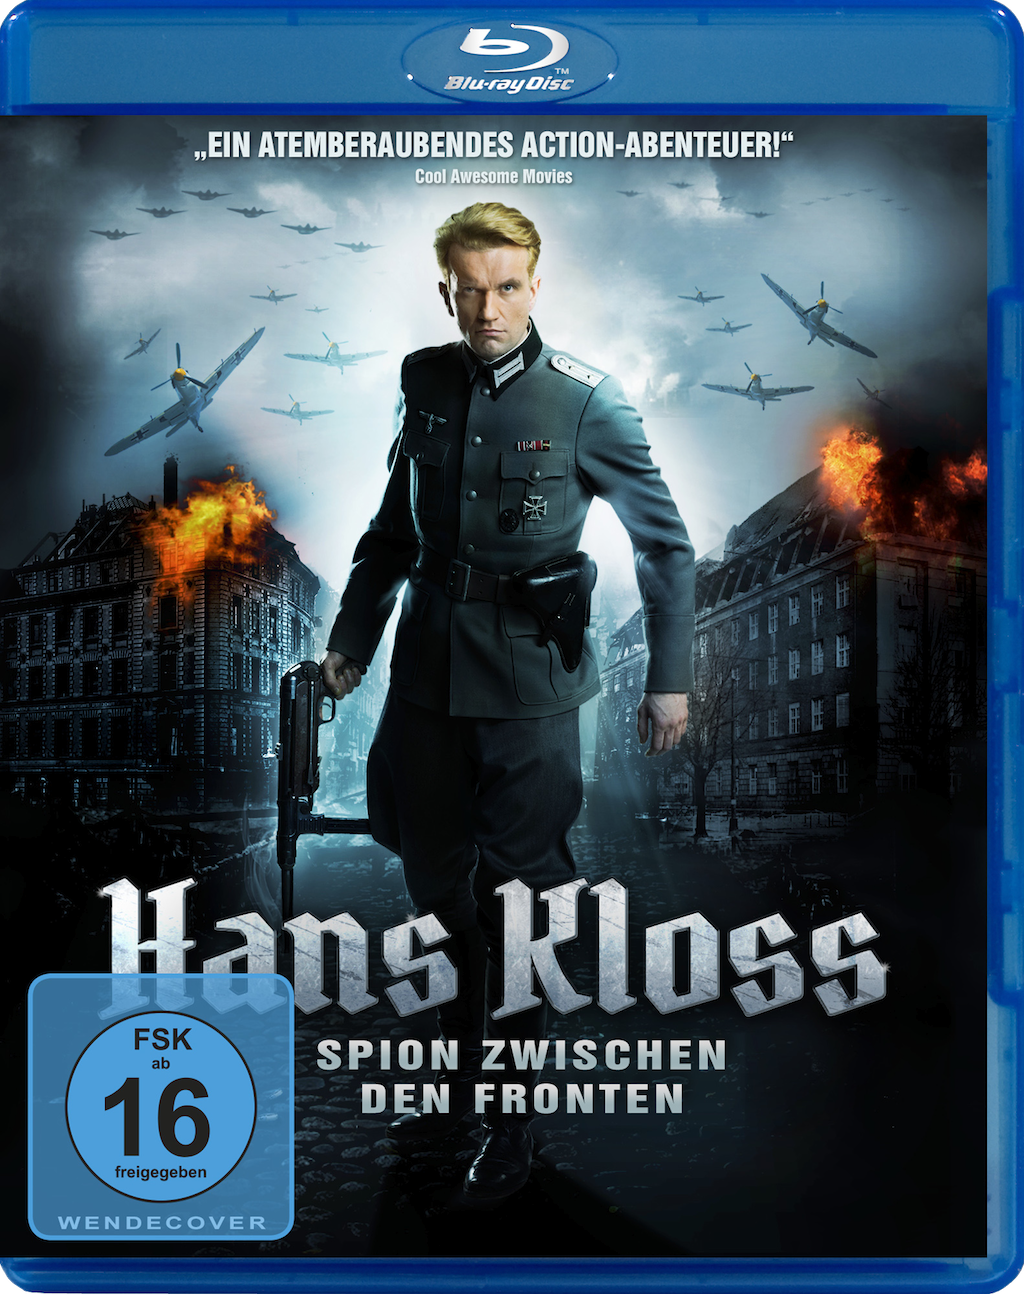 Hans Kloss Film